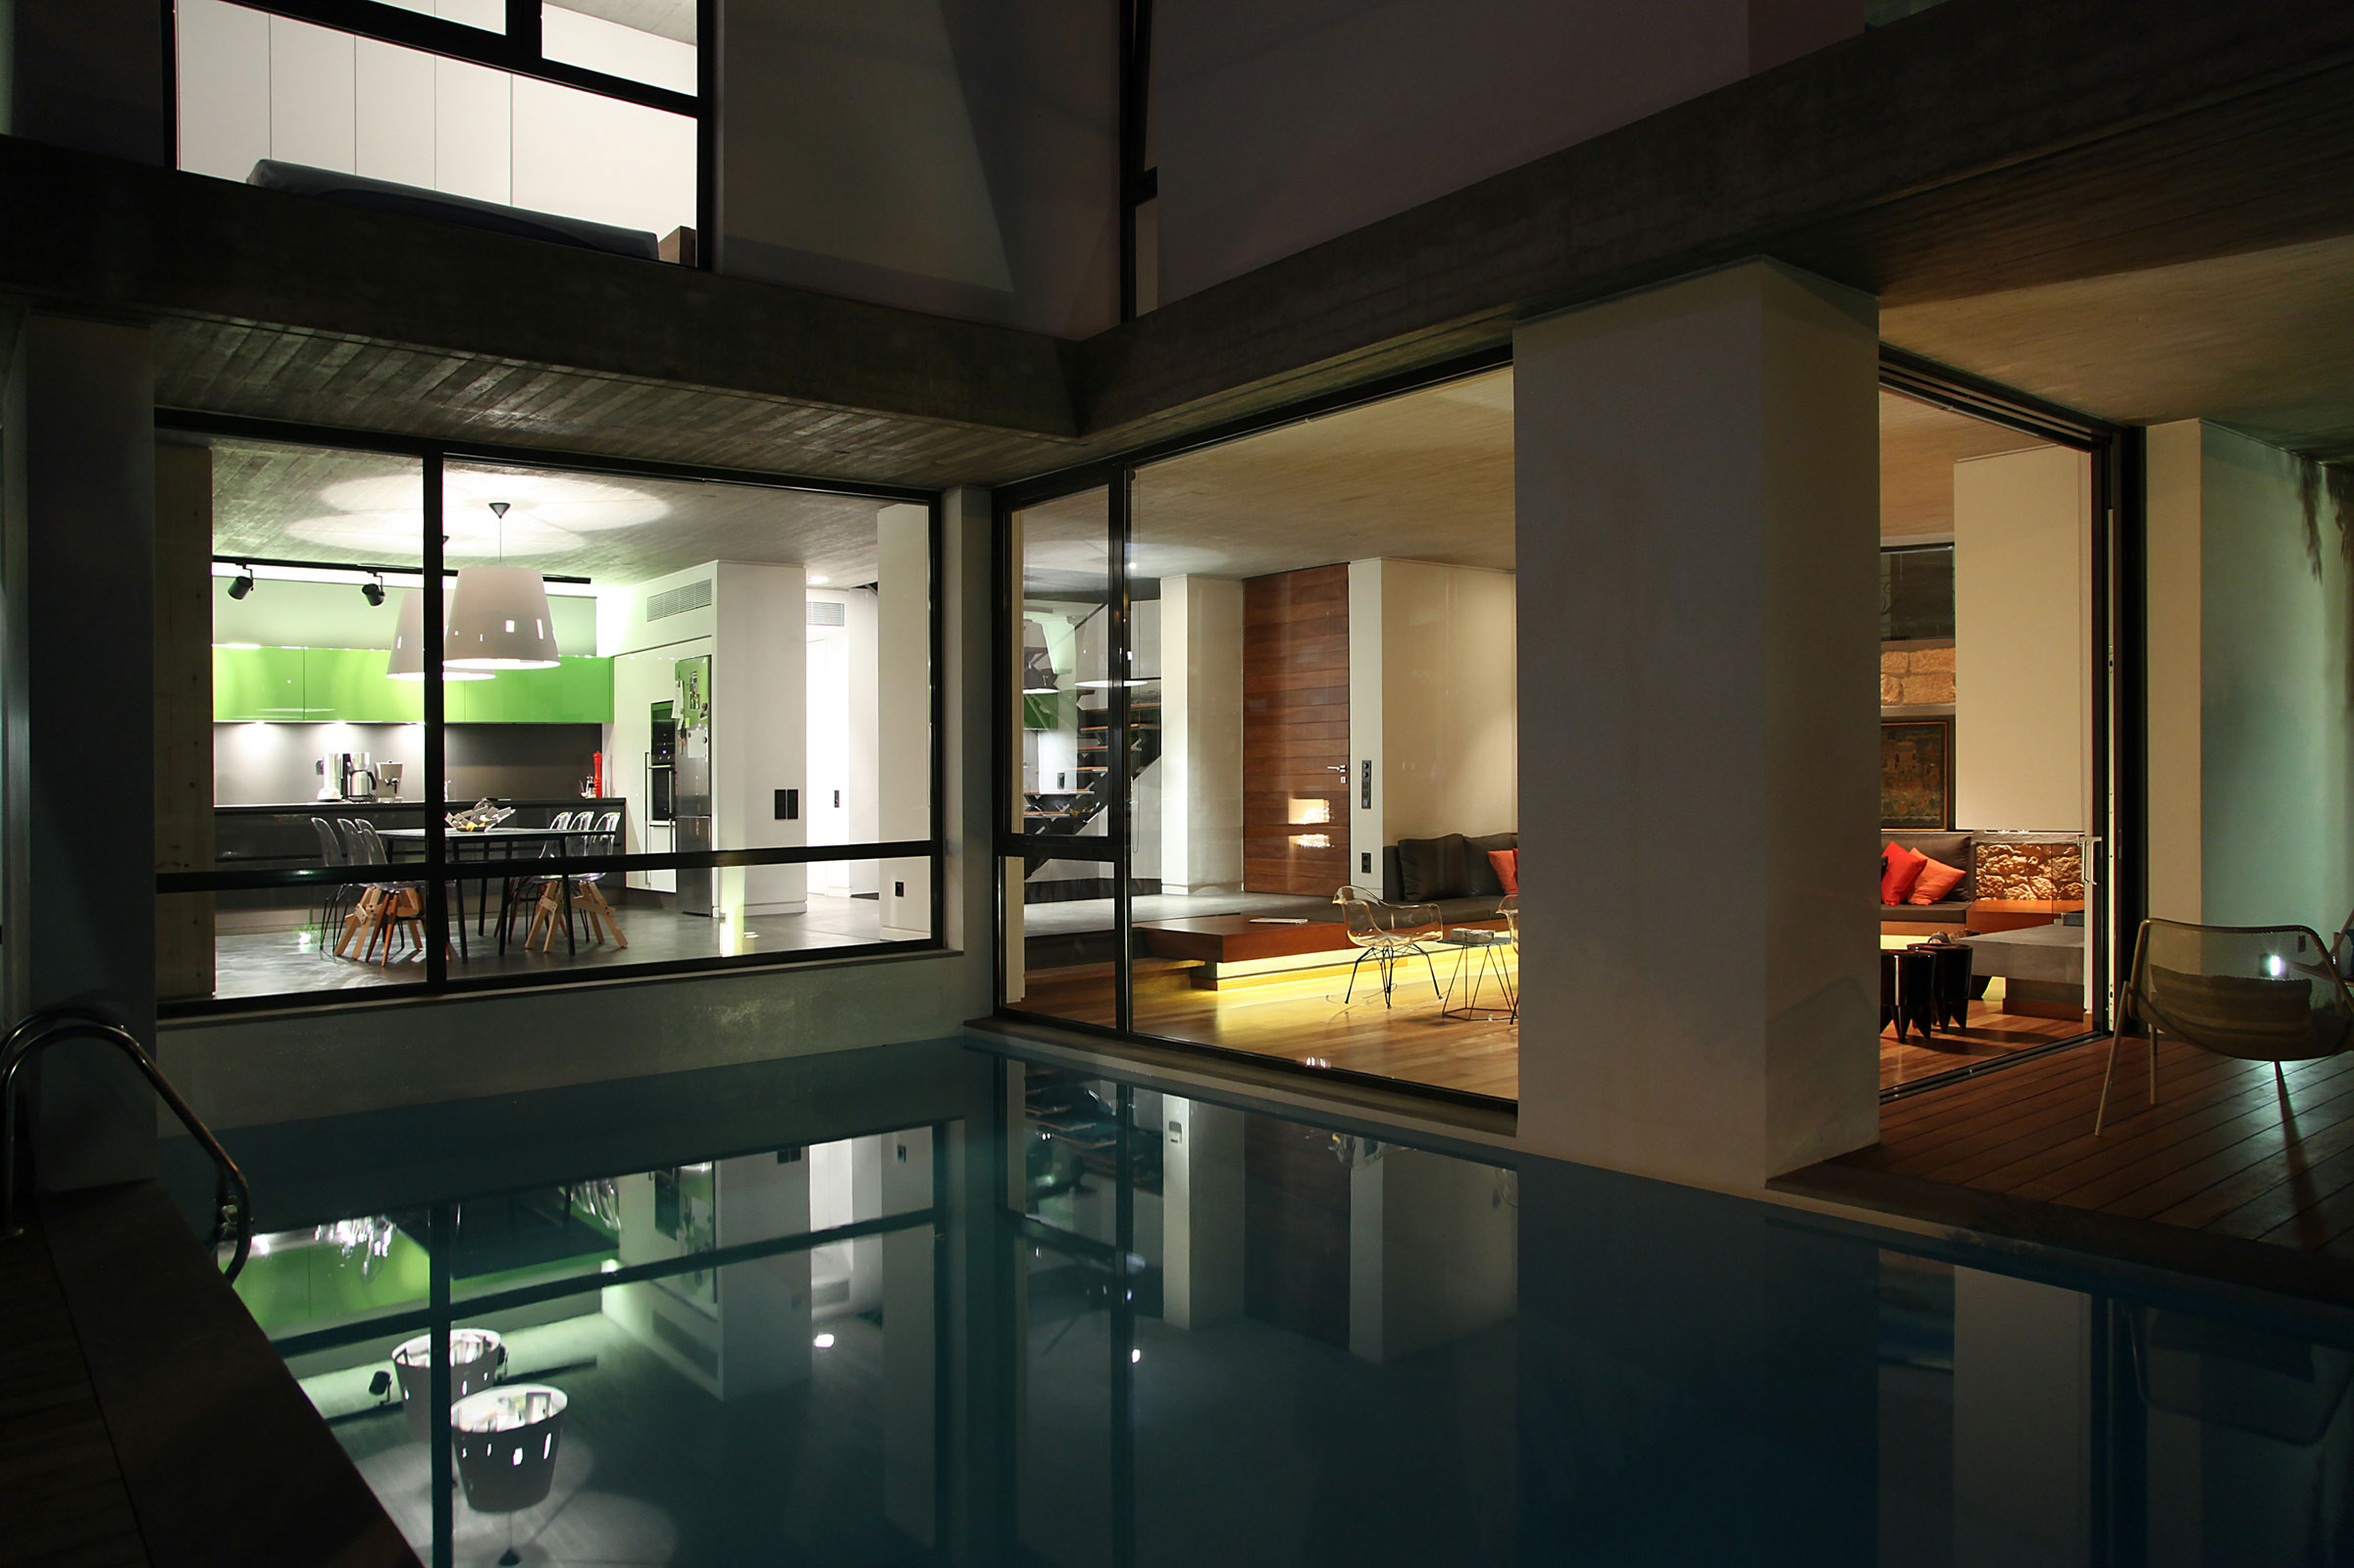 Простой дизайн интерьера дома с большим бассейном под окнами